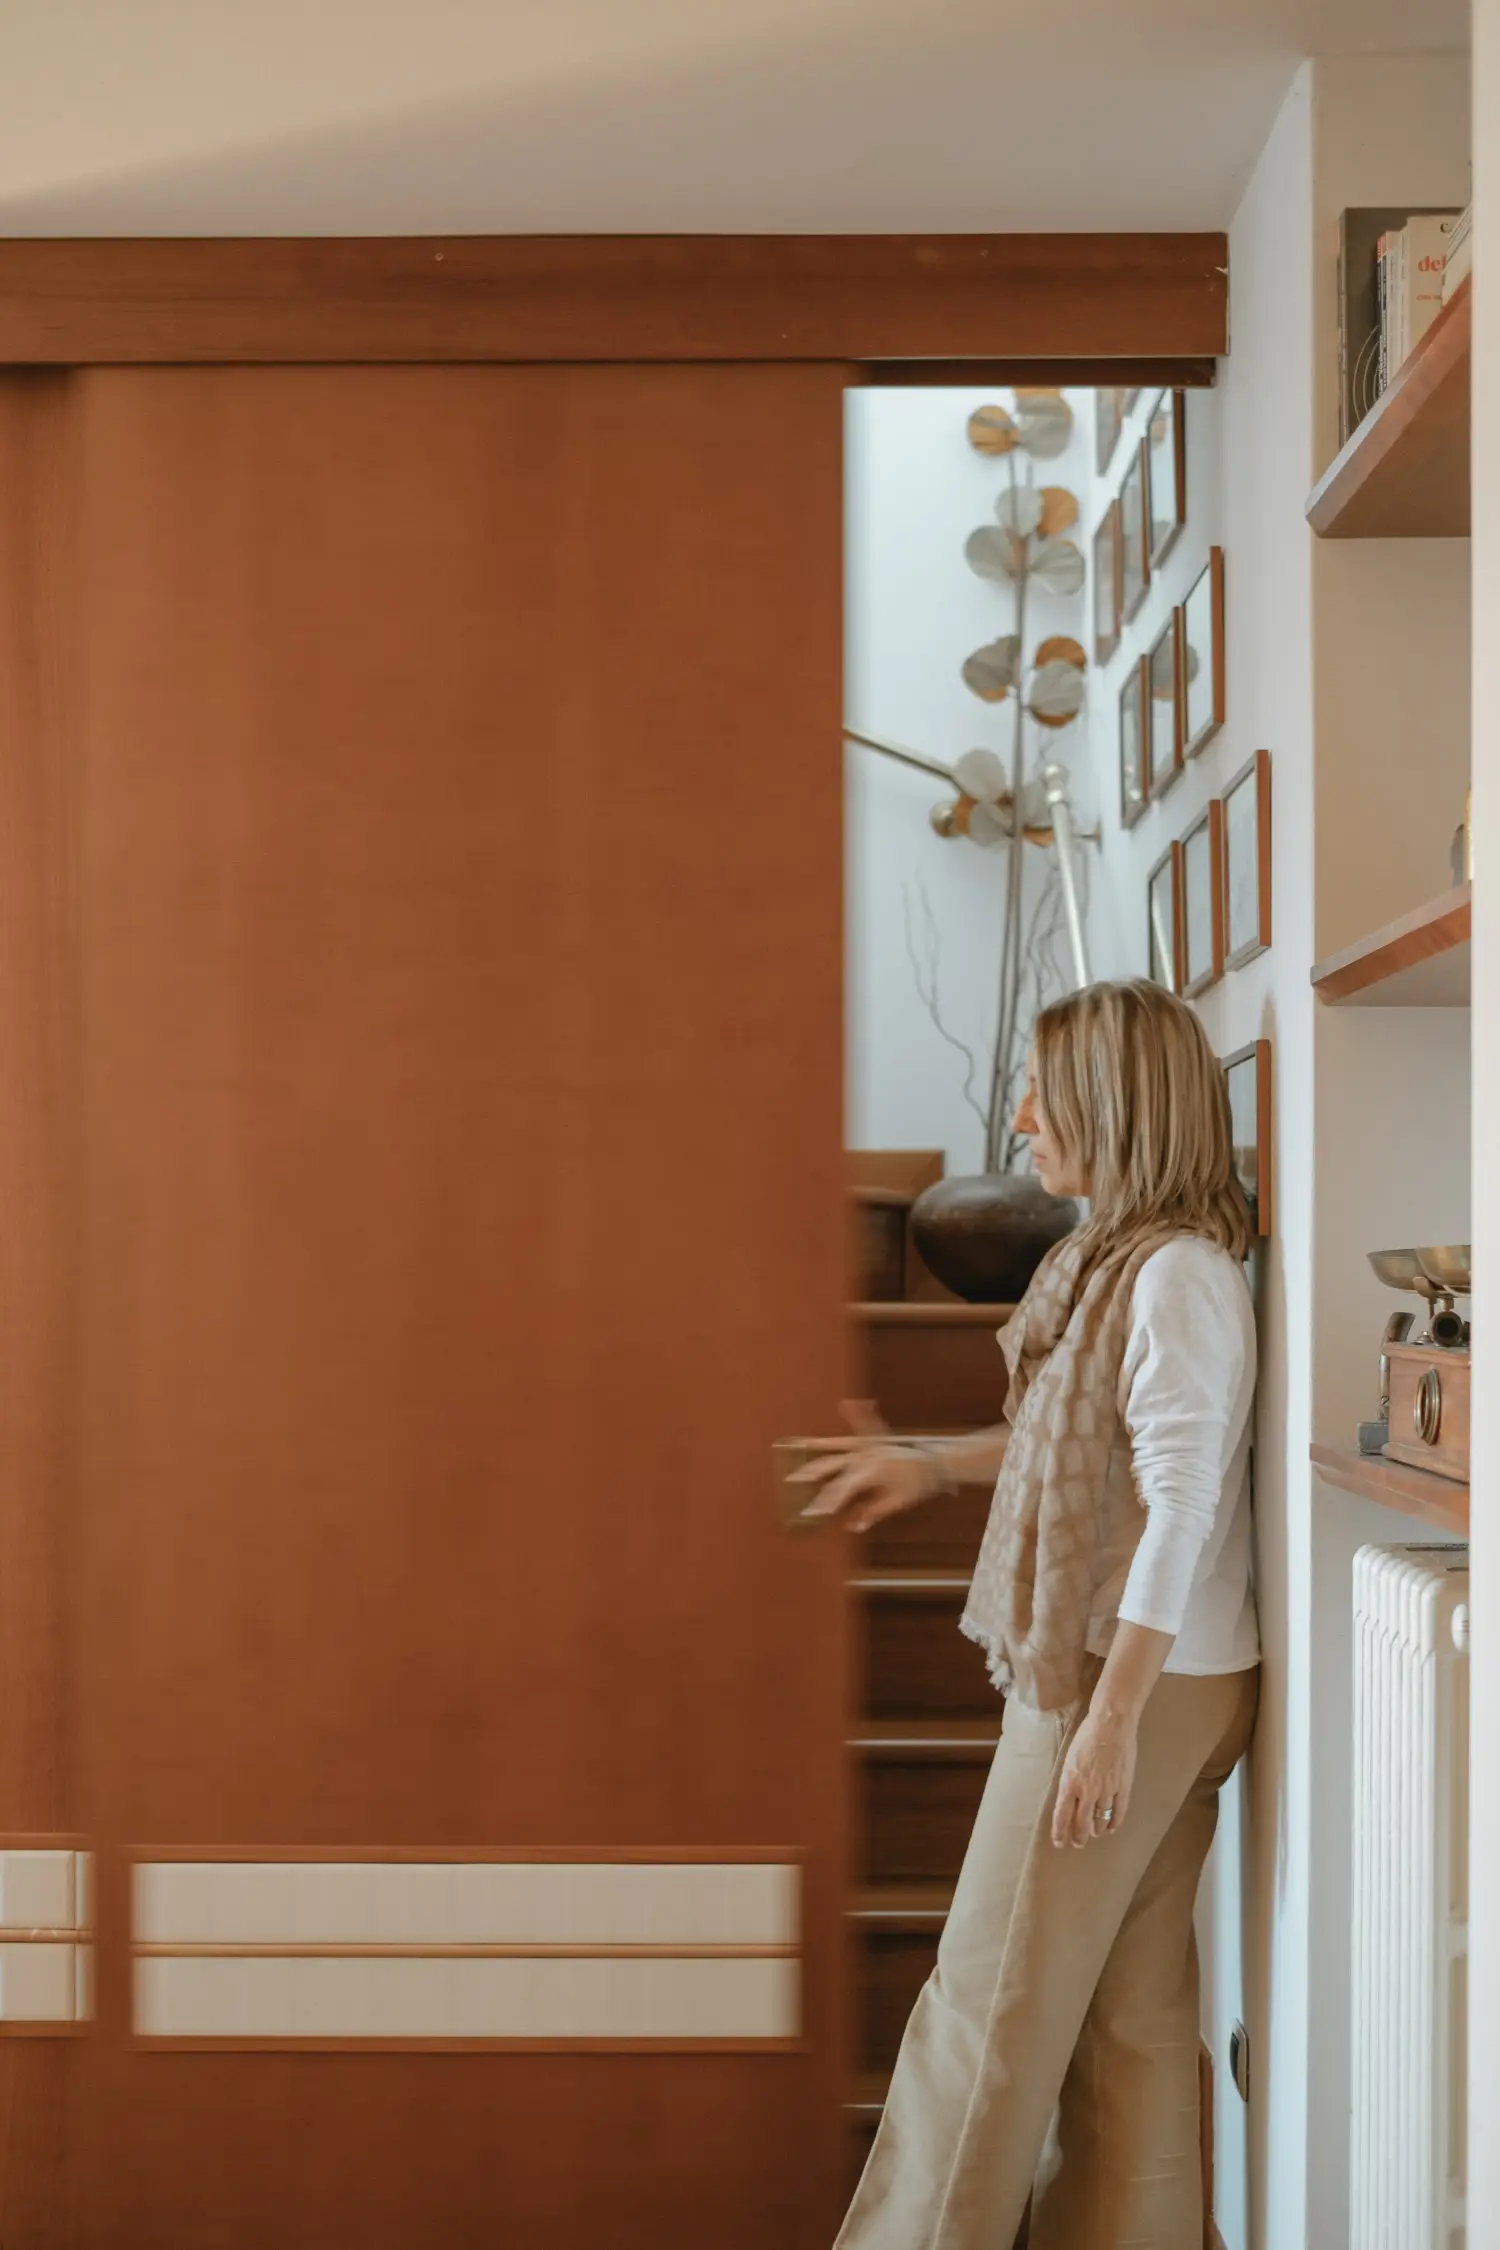 Stefania Luraghi, fondatrice du studio Elles Interior Design, est photographiée devant une porte coulissante qu'elle a conçue.